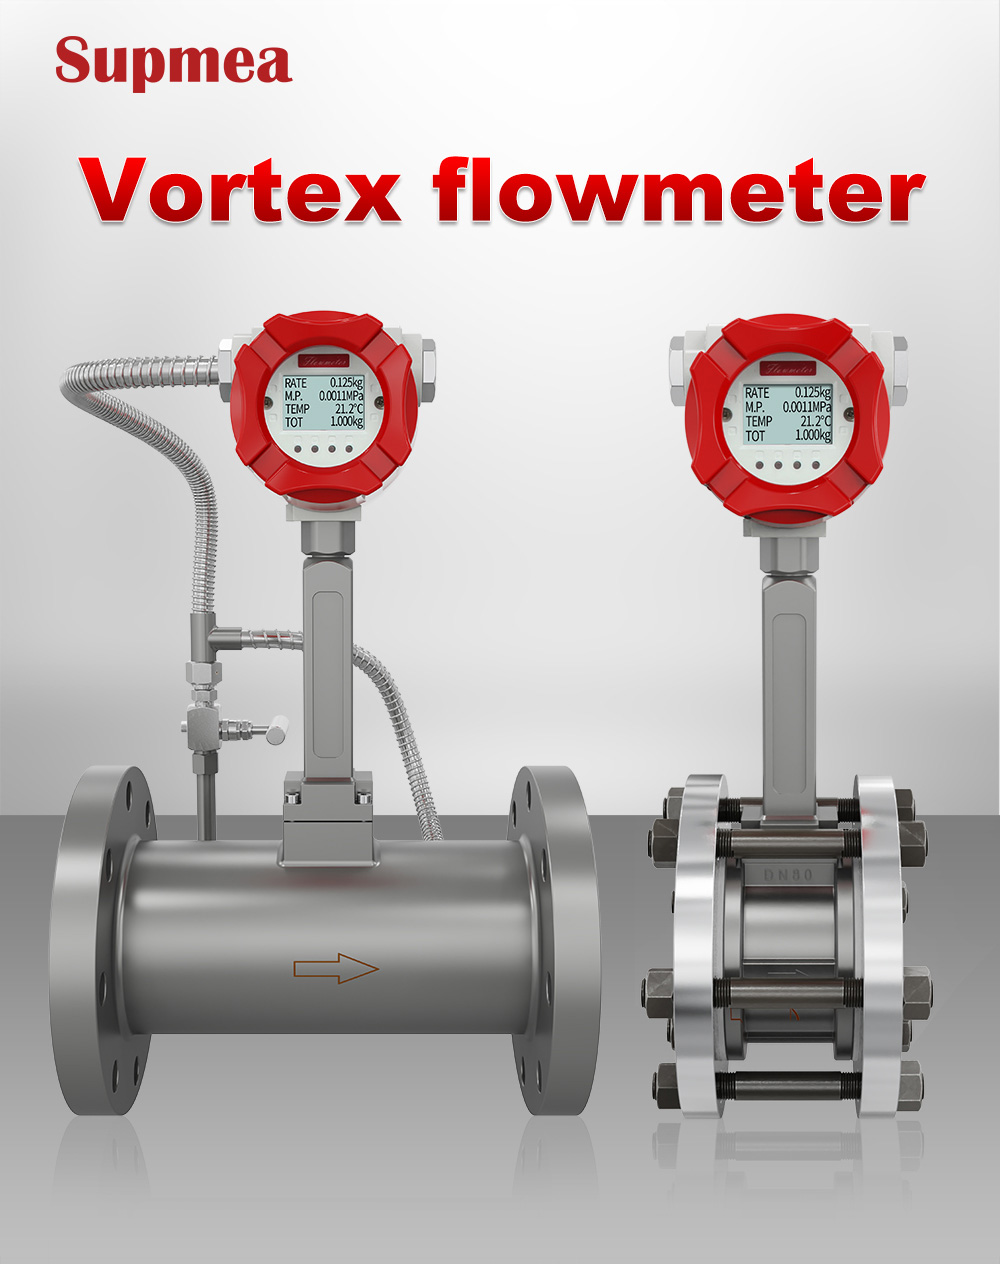 Supmea vortex steam flow meter